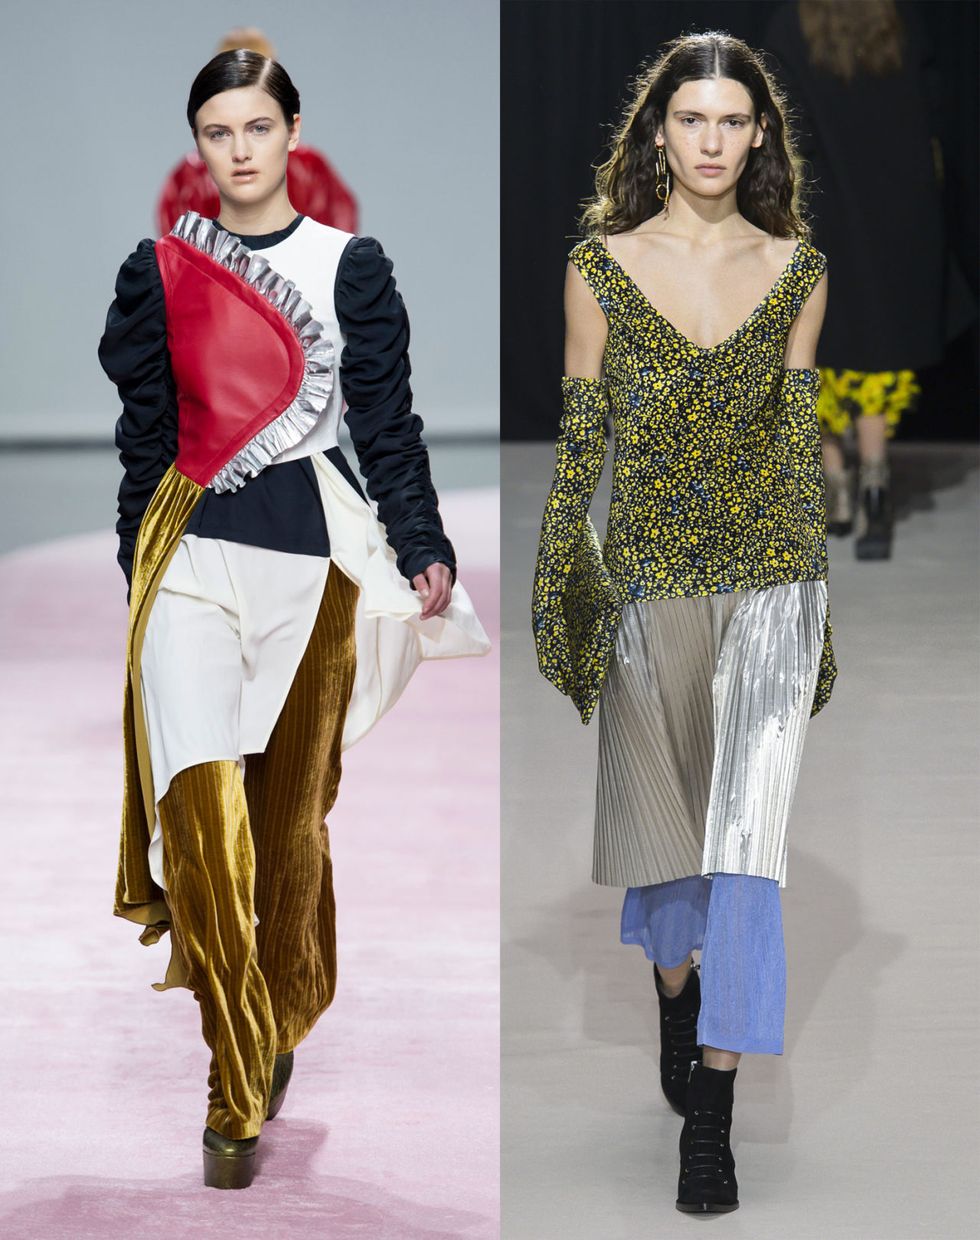 L'ultimo trend in fatto di moda e stile è una sfida senza regole e arriva diretta dalla Paris Fashion Week, dove tutto viene stravolto, allacciato al contrario e sovrapposto senza alcuna logica apparente